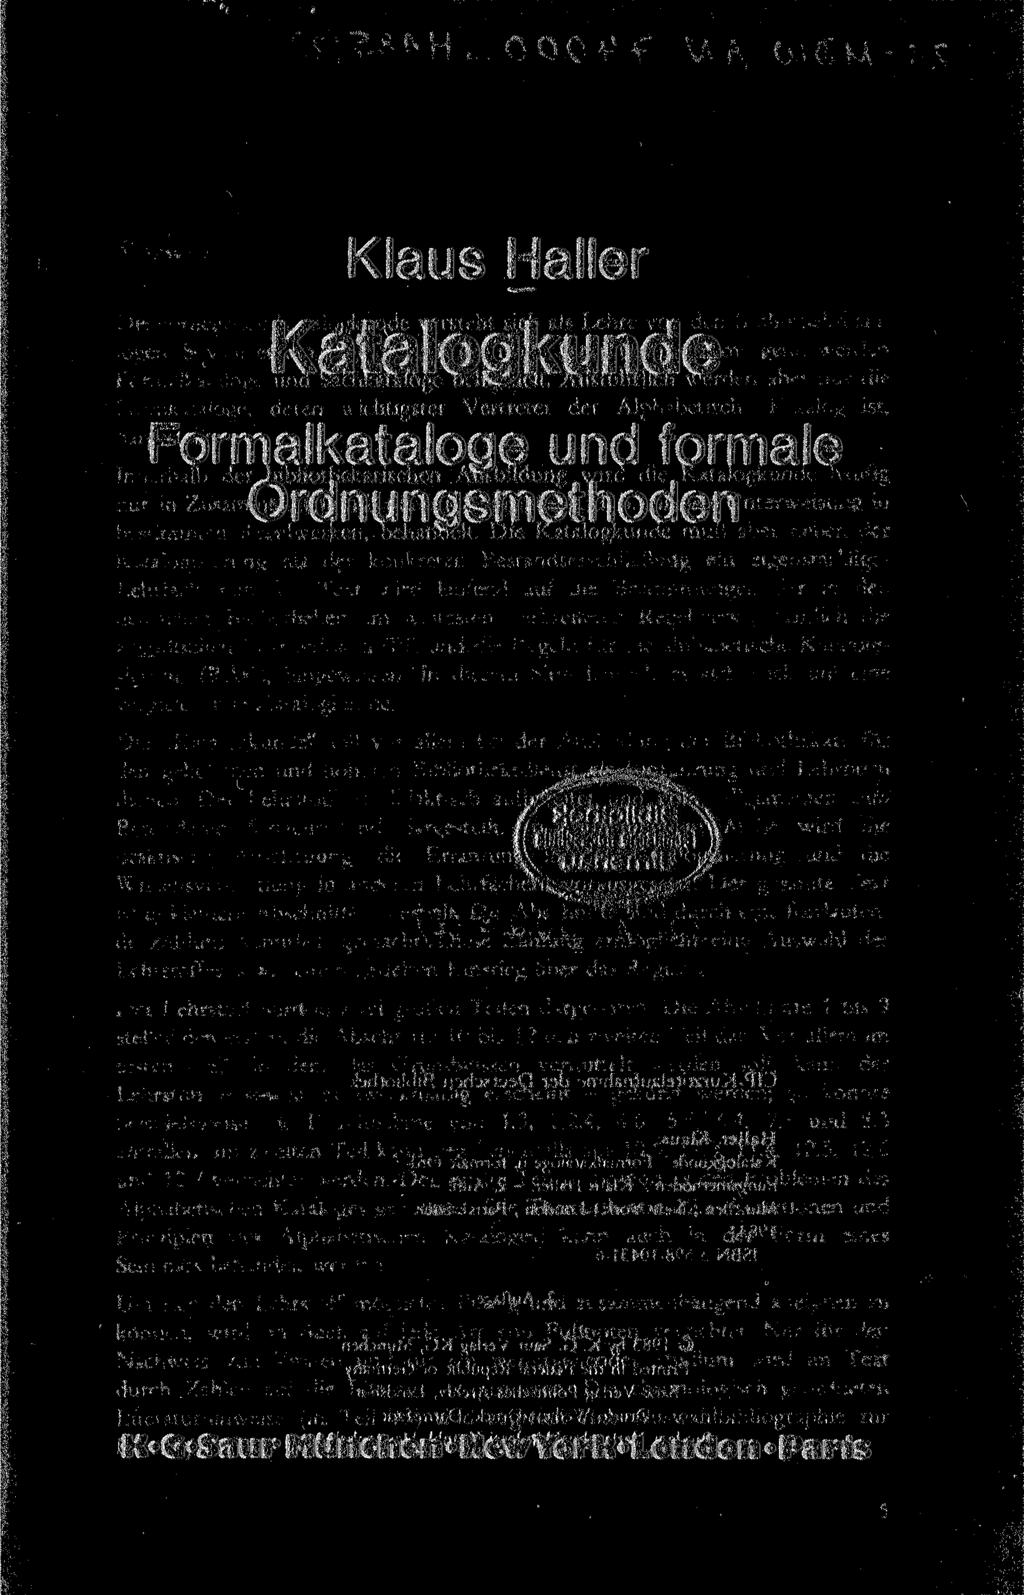 Klaus Haller Katalogkunde Formalkataloge und formale